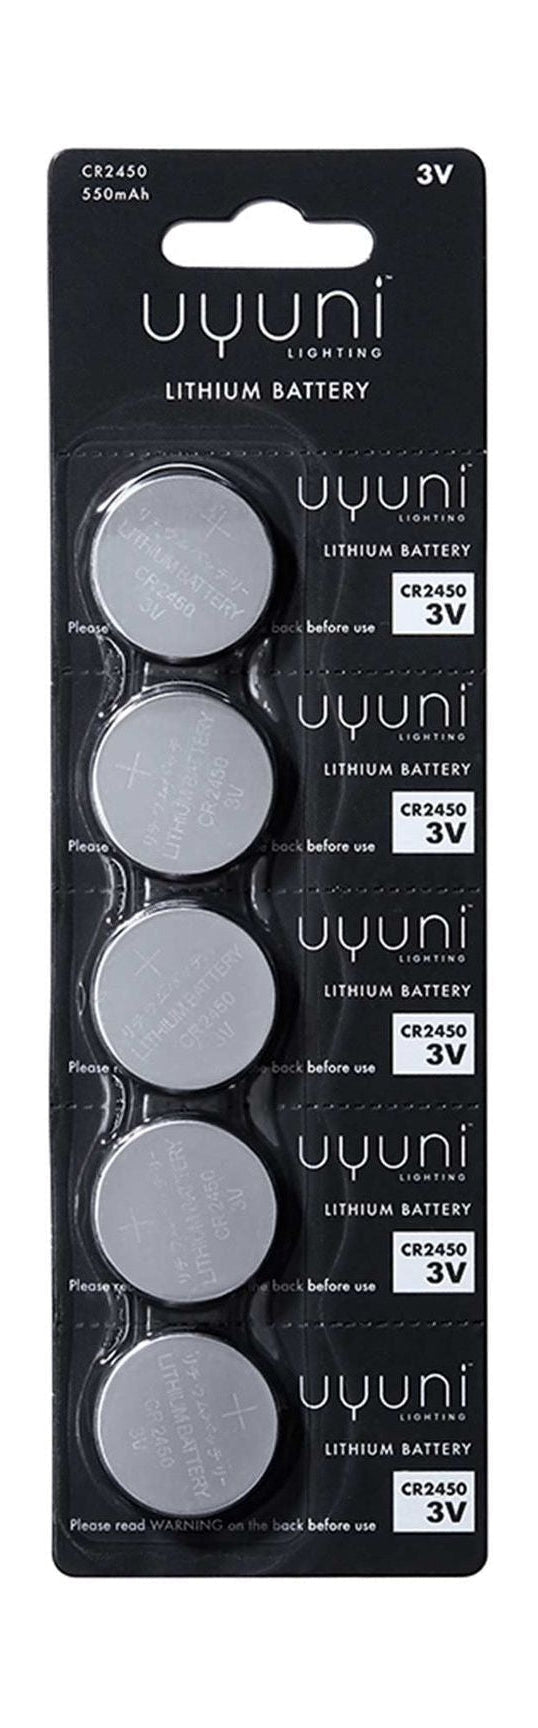 Uyuni Lighting Cr2450 Lithium Batteries 5 Pak